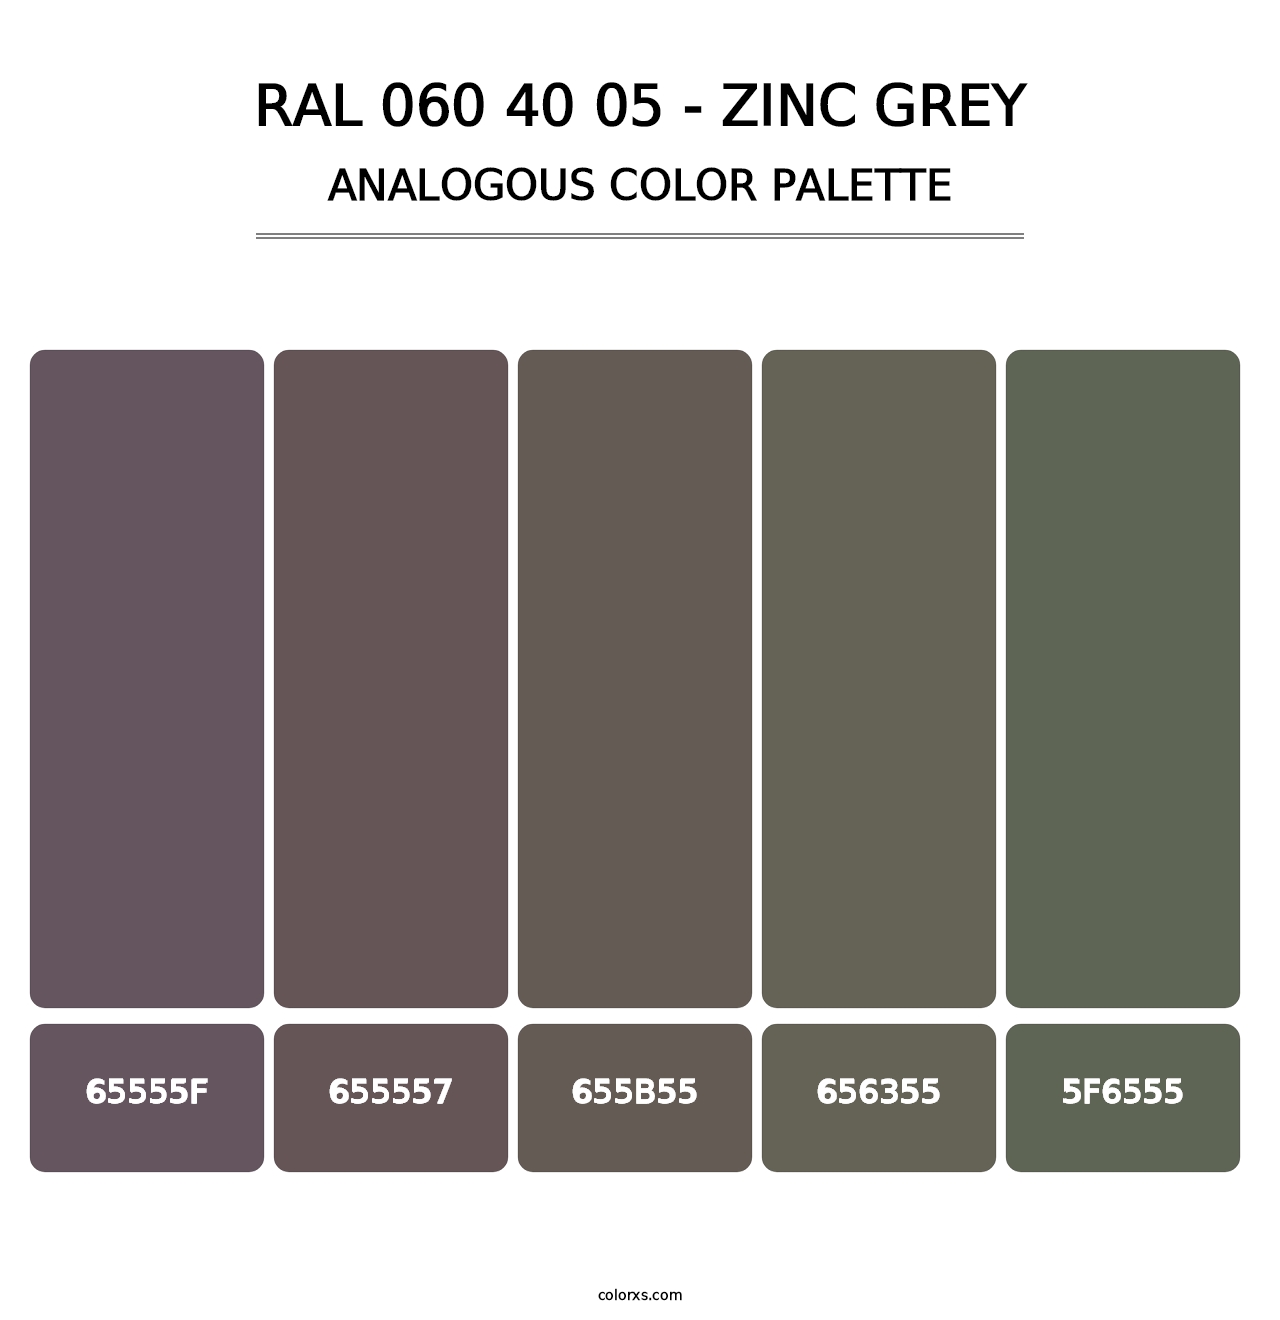 RAL 060 40 05 - Zinc Grey - Analogous Color Palette